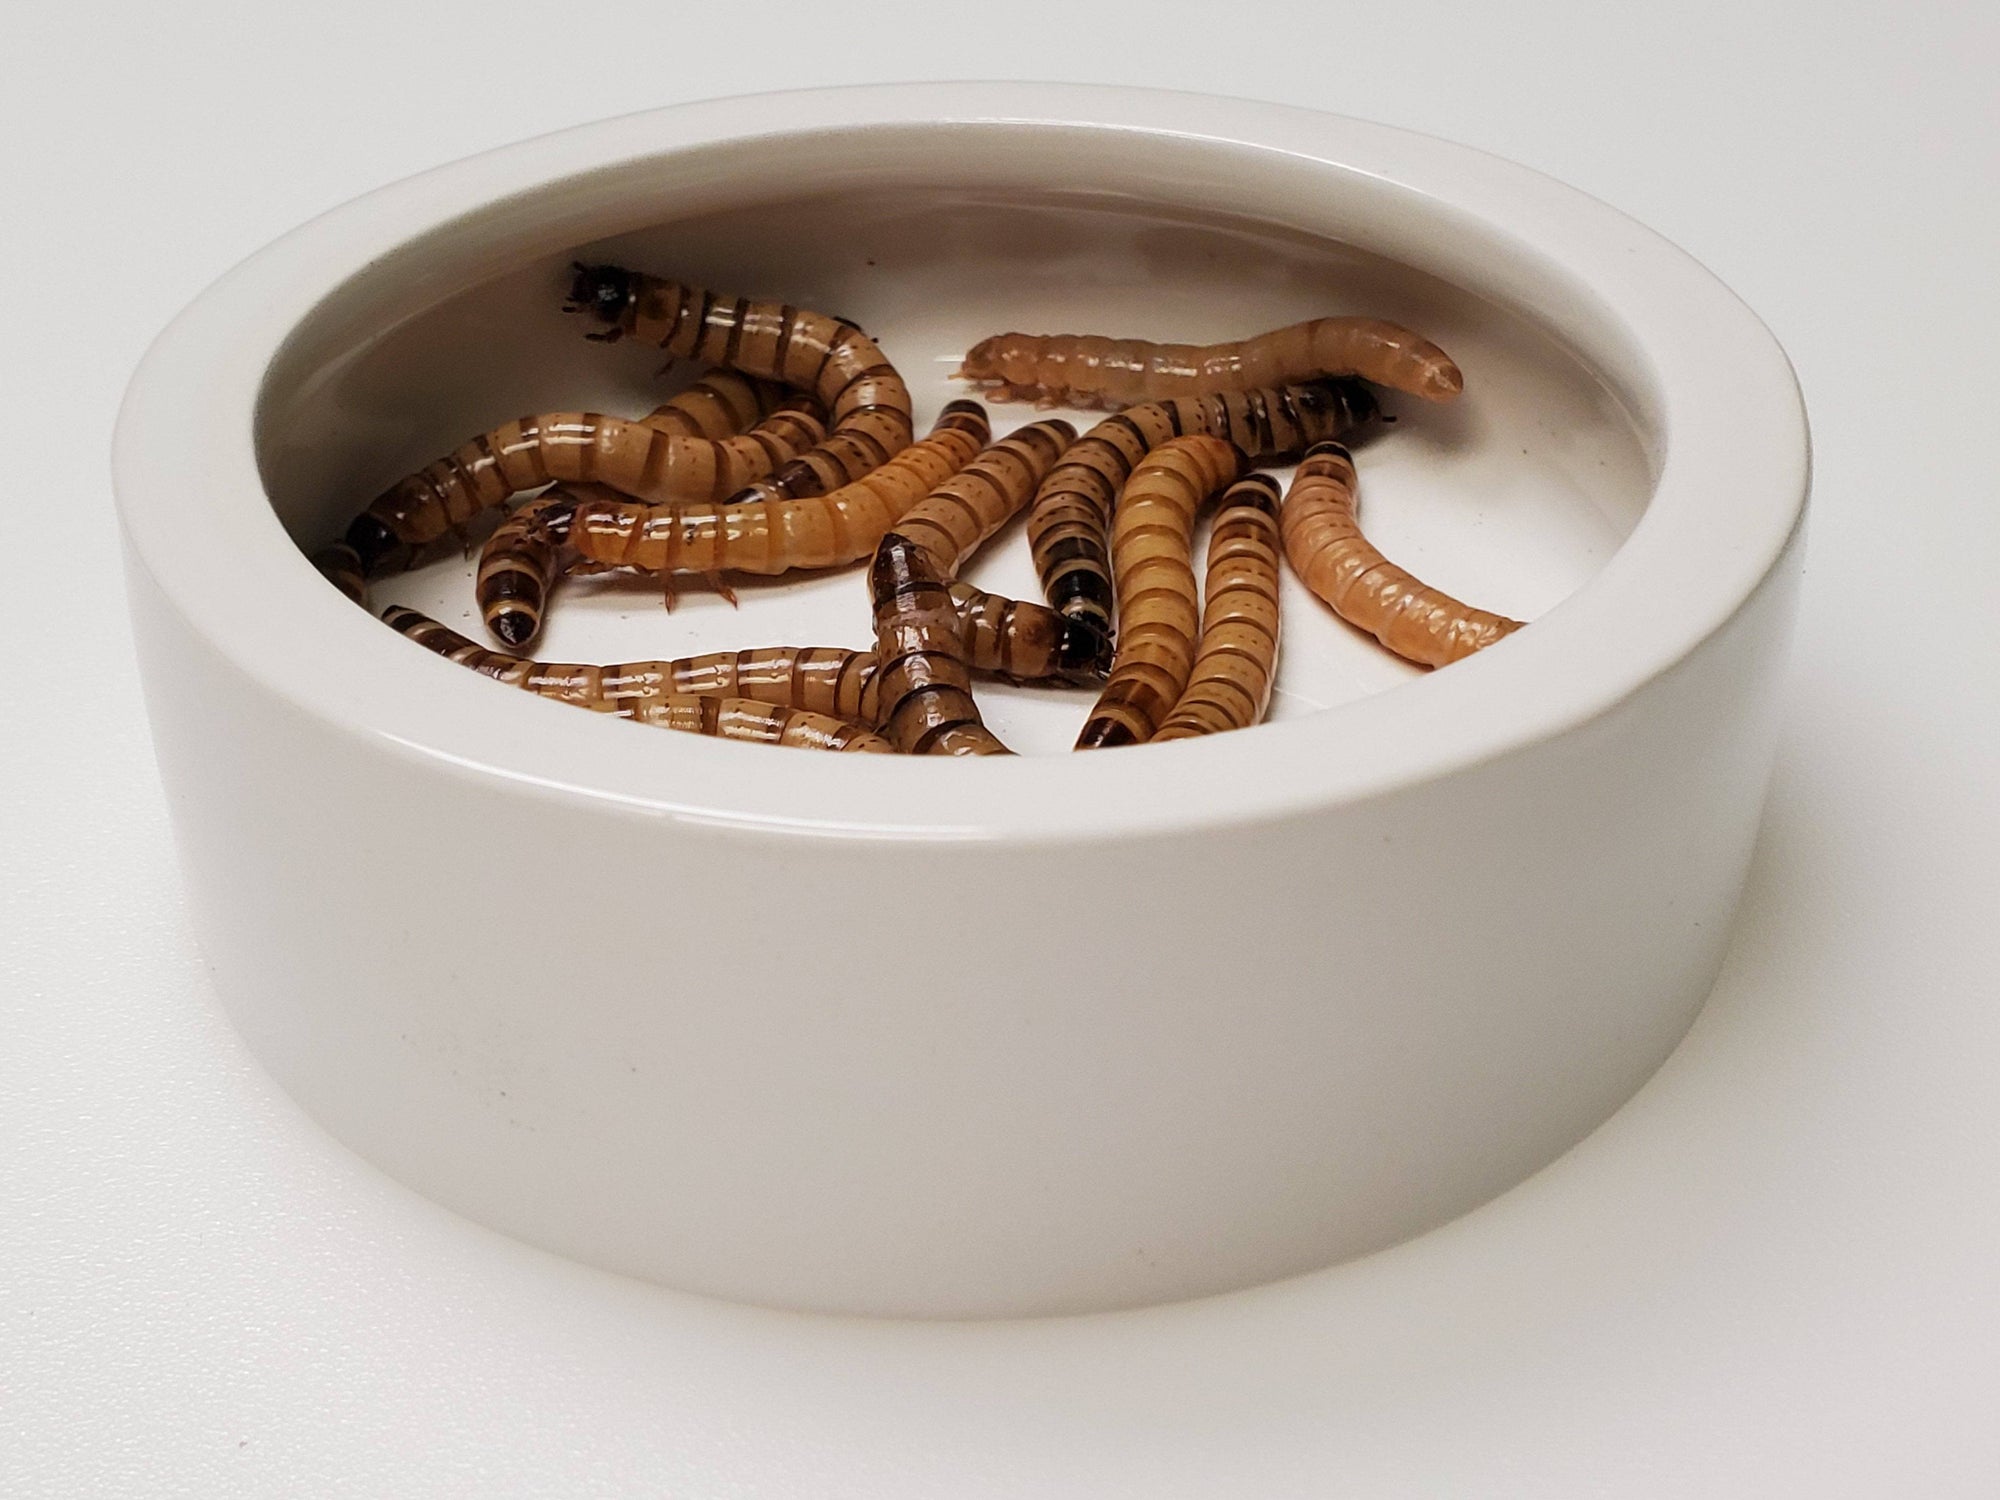 Ceramic No Escape Food Dishes - ADD-ON ITEM - Reptile Deli Inc.